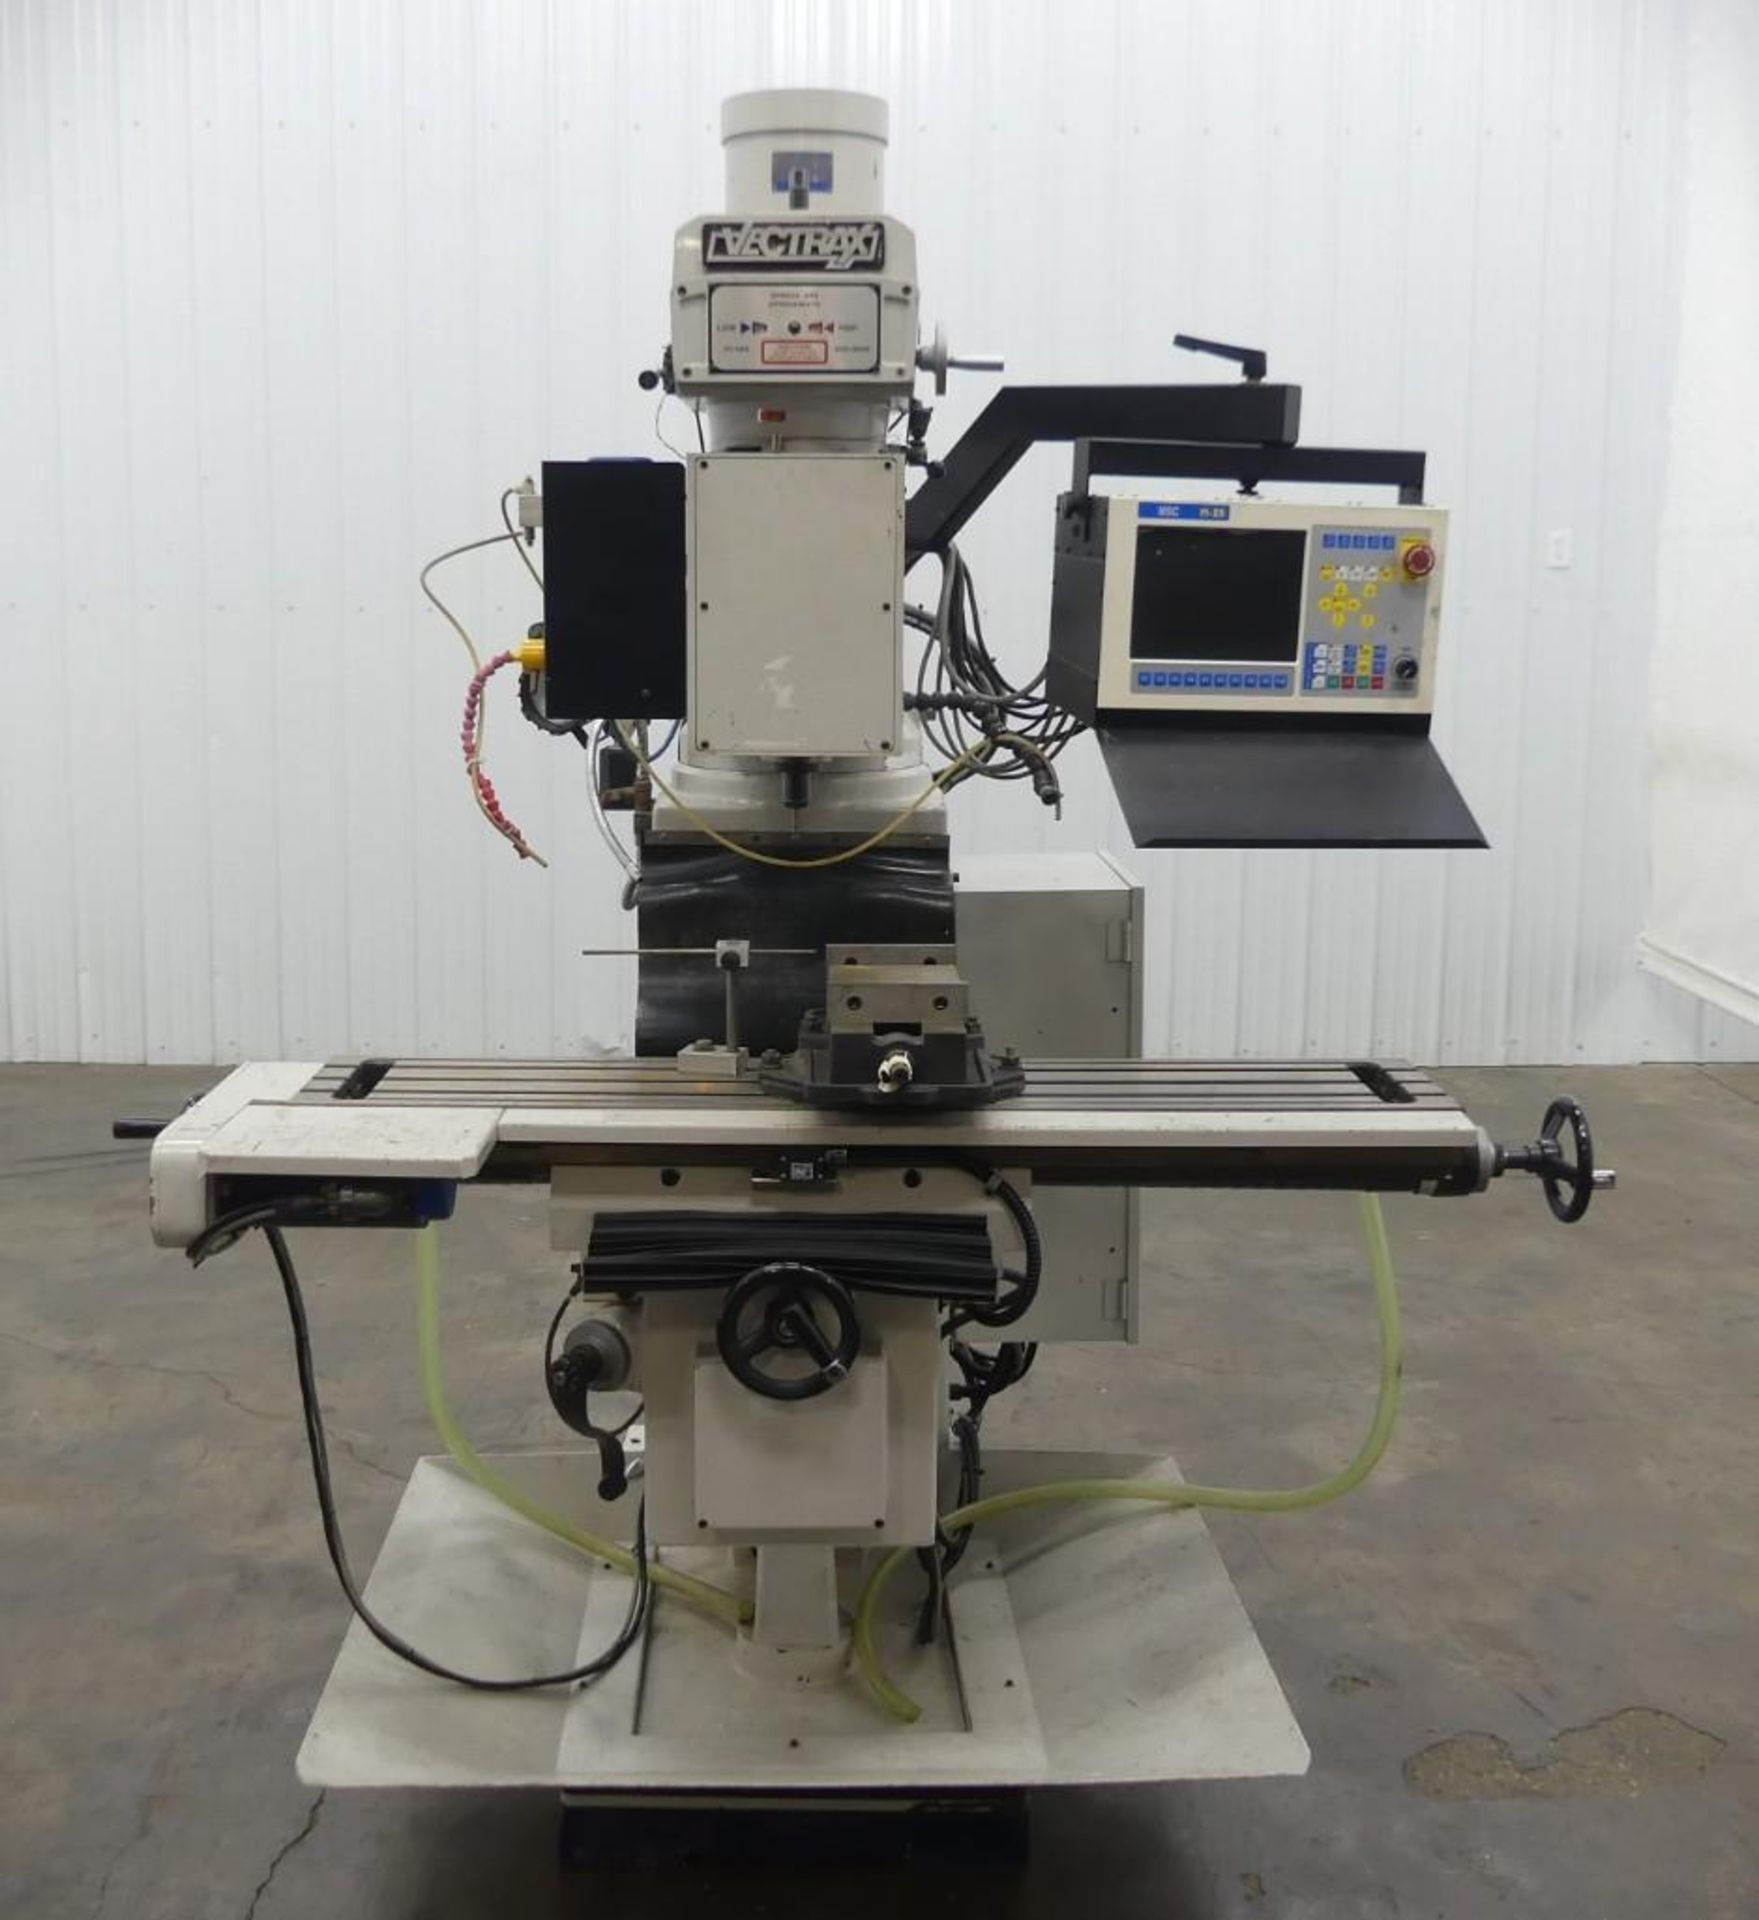 Vectrax BS-N20V CNC Milling Machine